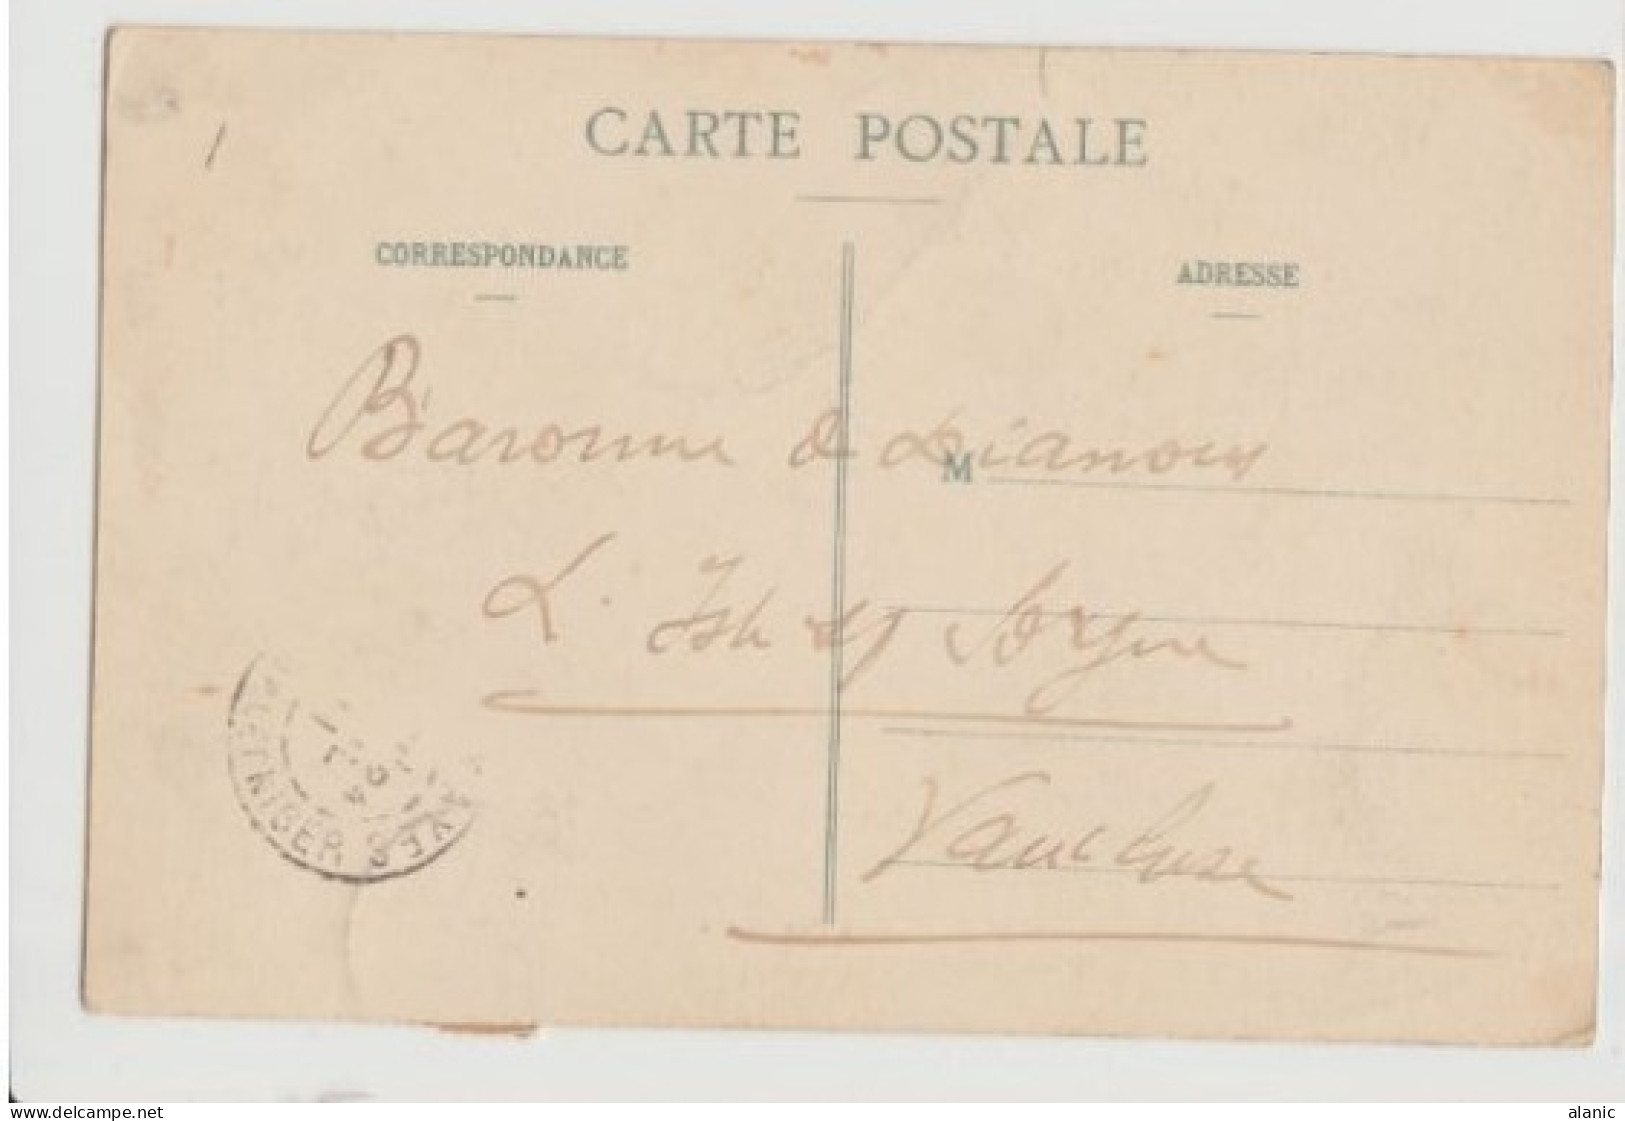 HAUT SENEGAL -NIGER- N°4 Départ KAYES 1911-Sur C.P.A-SOUDAN PASSAGE D UN MARIGO-Circulée  -BE - Lettres & Documents